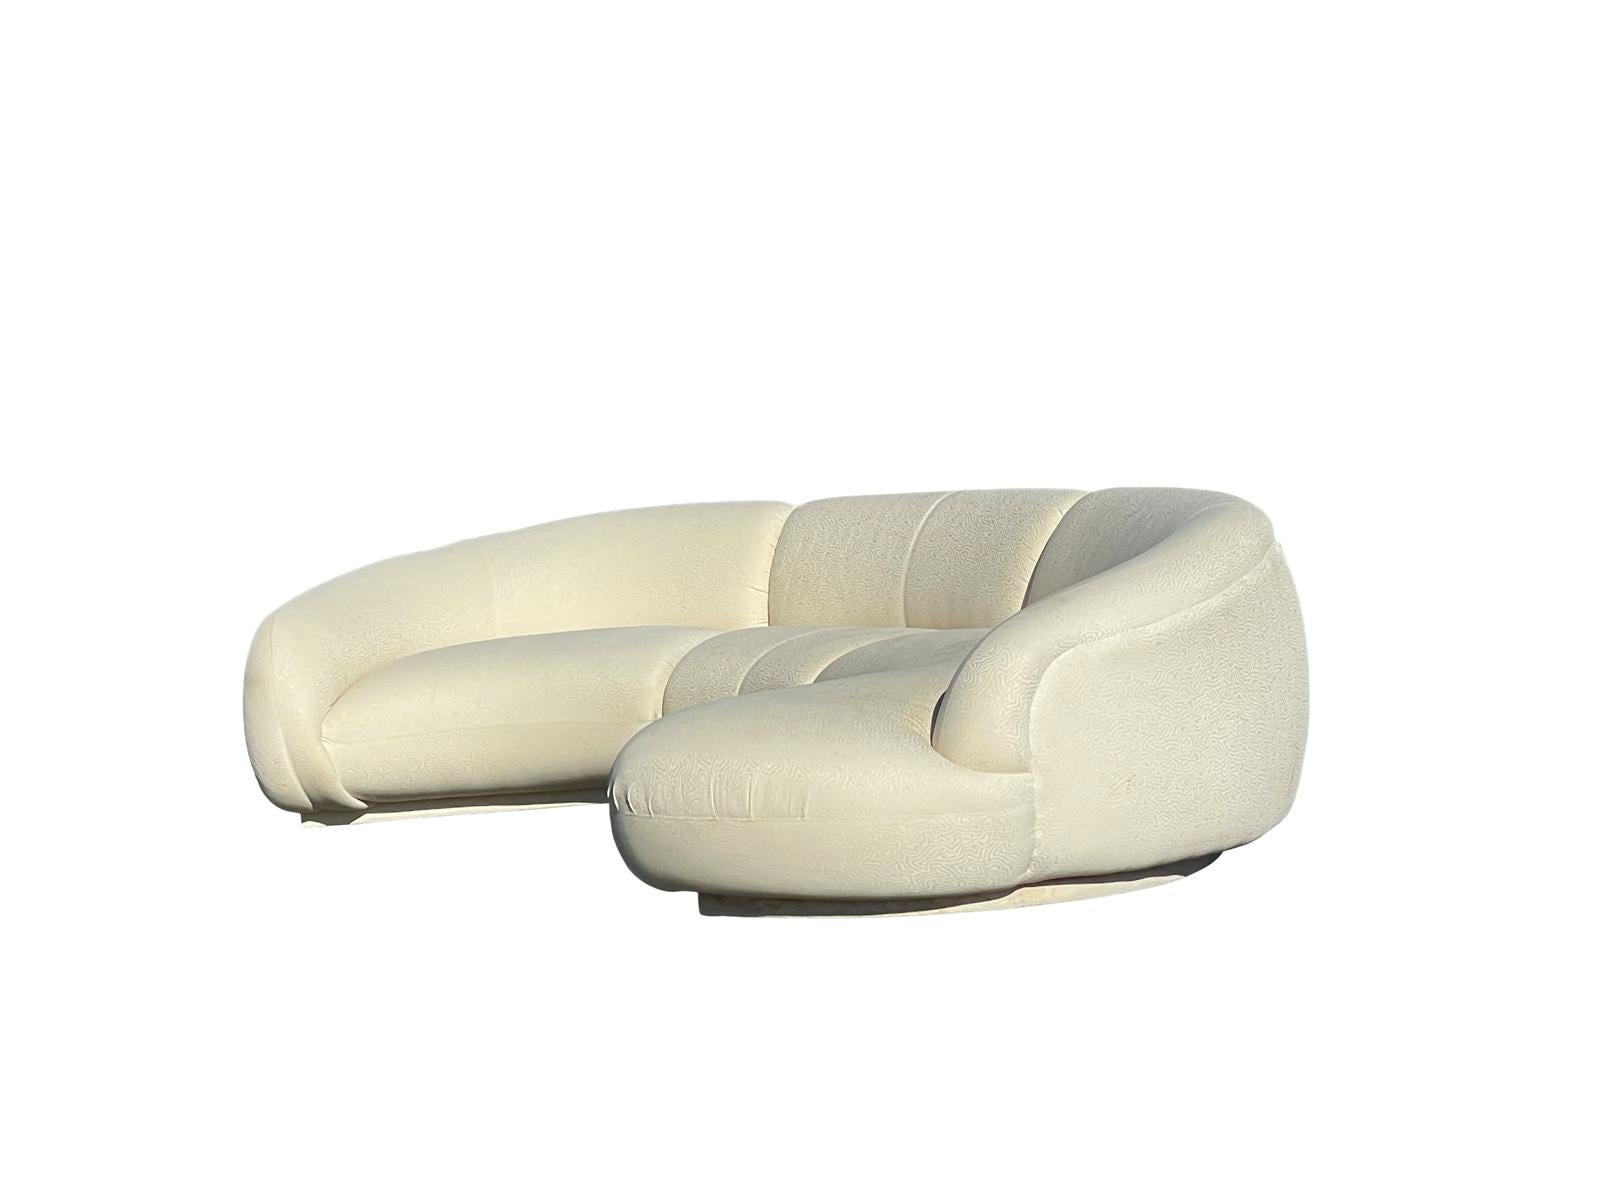 C'est un canapé unique, très confortable. La forme est étonnante et serait le point central de n'importe quelle pièce Fabriqué par The Furniture 